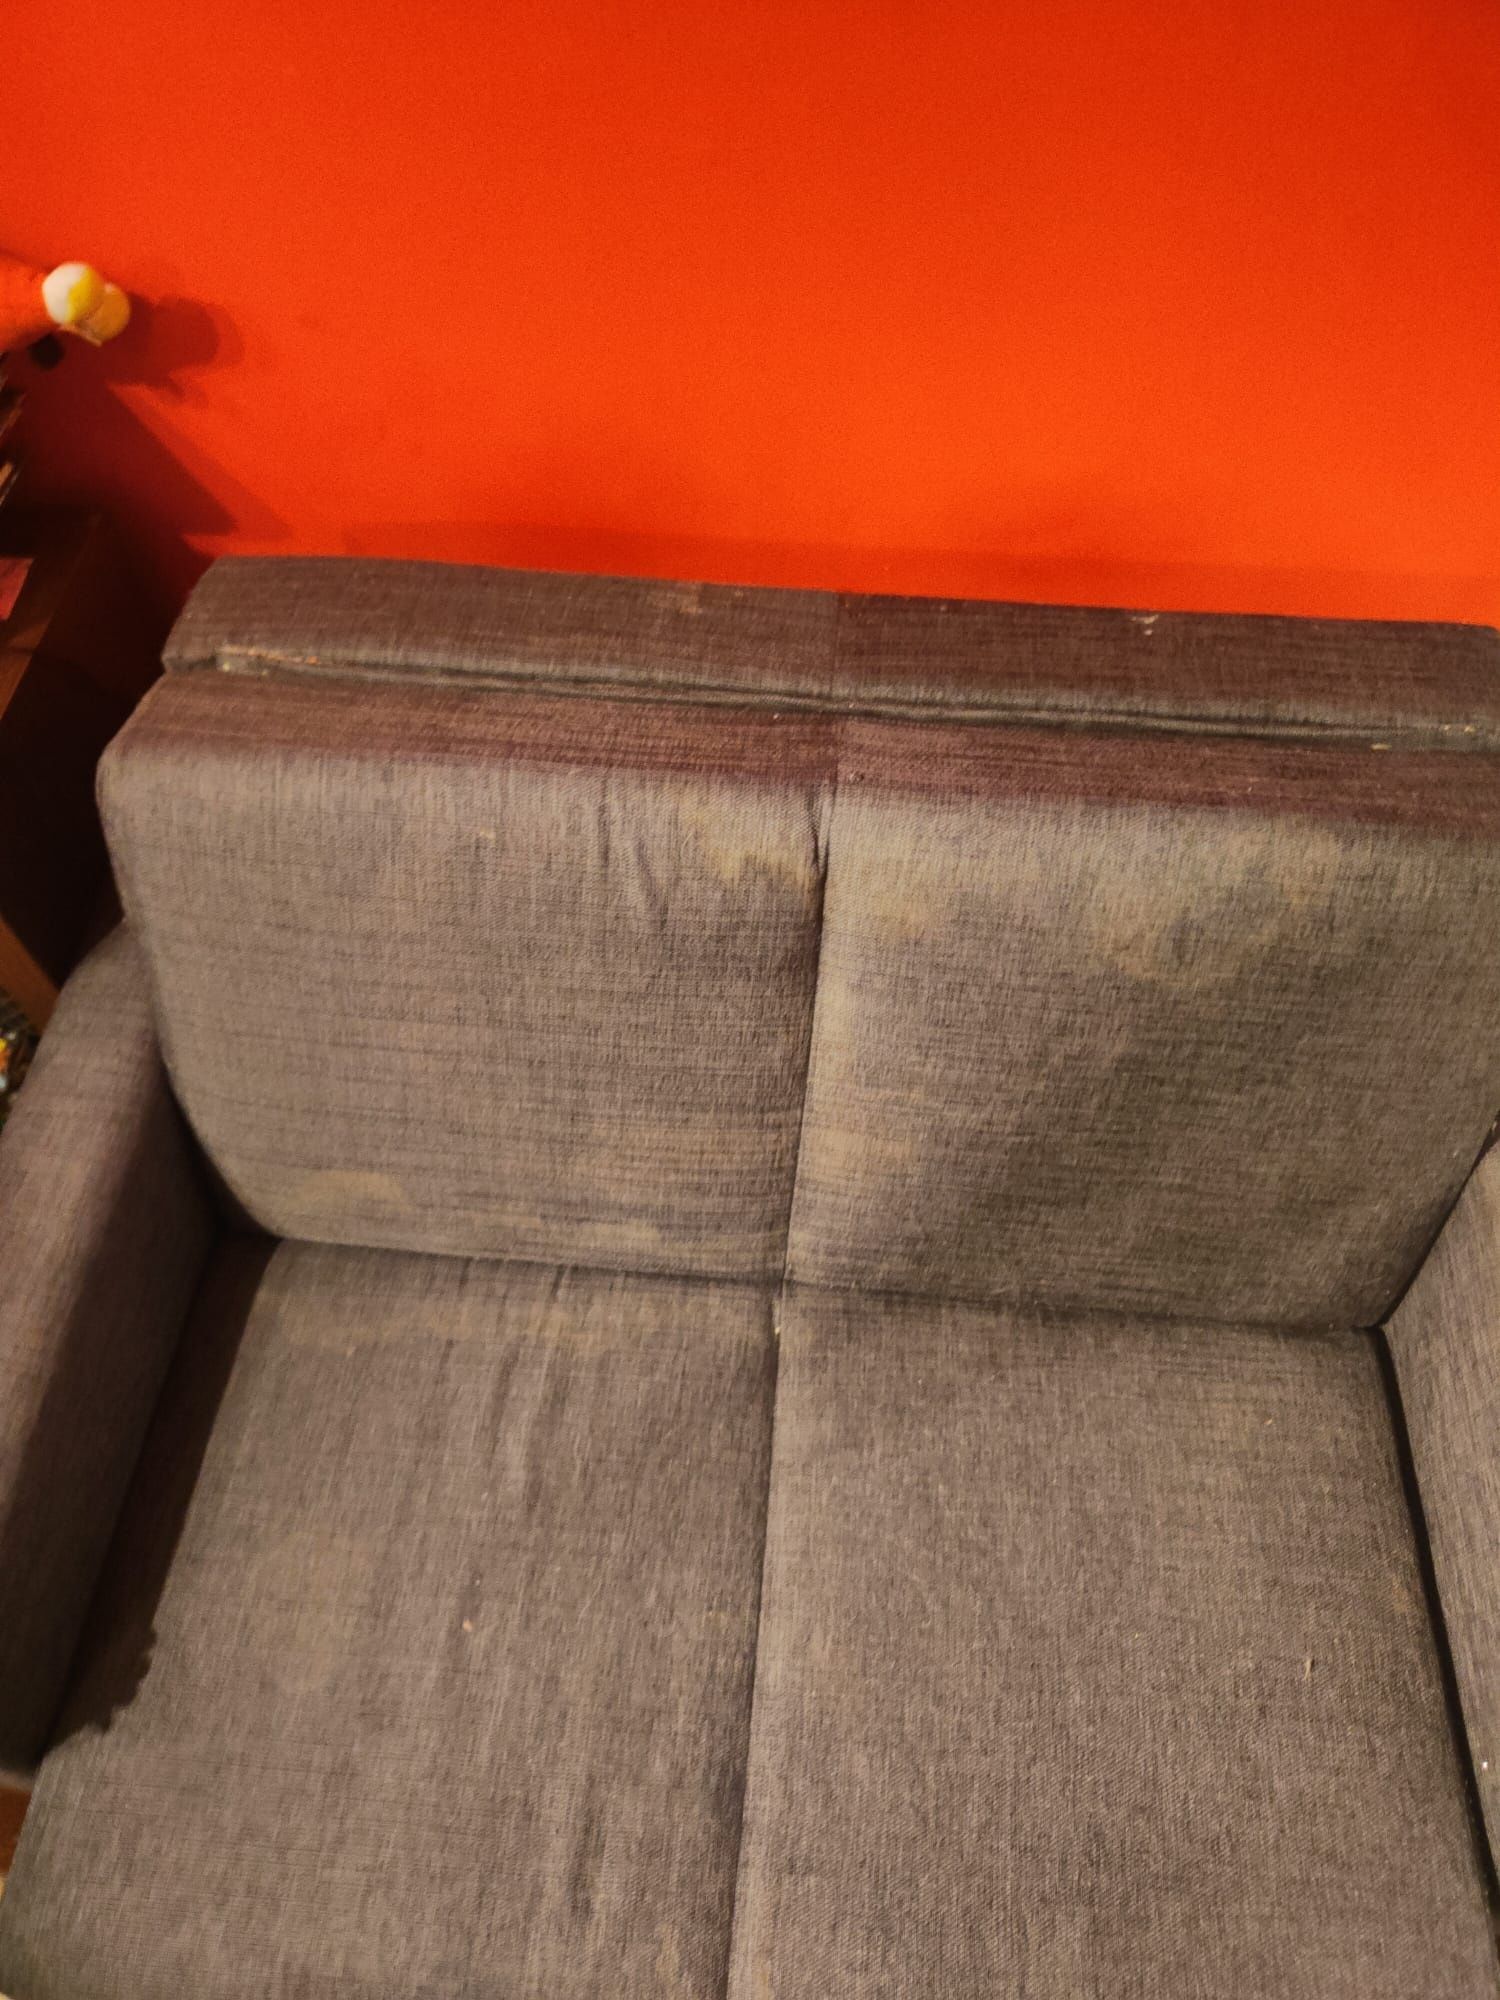 Kanapa szara używana tanio sofa